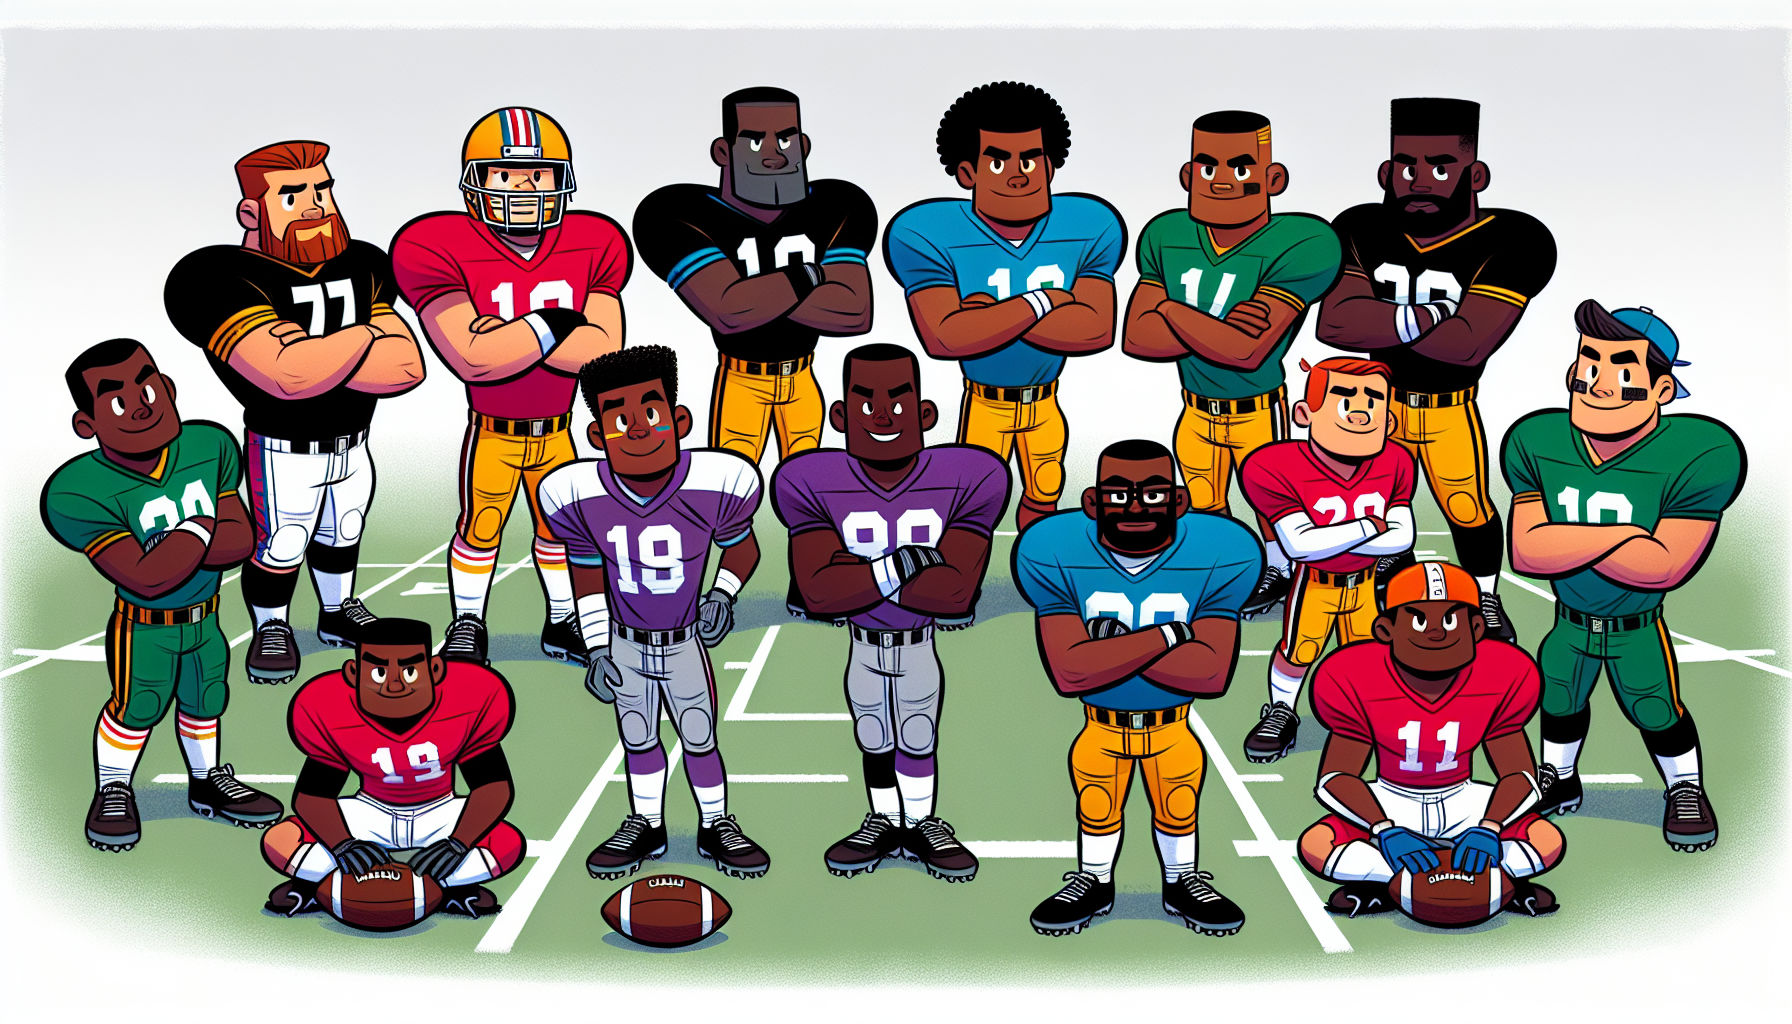 FootballR - NFL - Diese Beschreibung wurde automatisch generiert. Eine freundliche Cartoon-Footballmannschaft, die für ein Foto beim NFL Scouting Combine posiert.